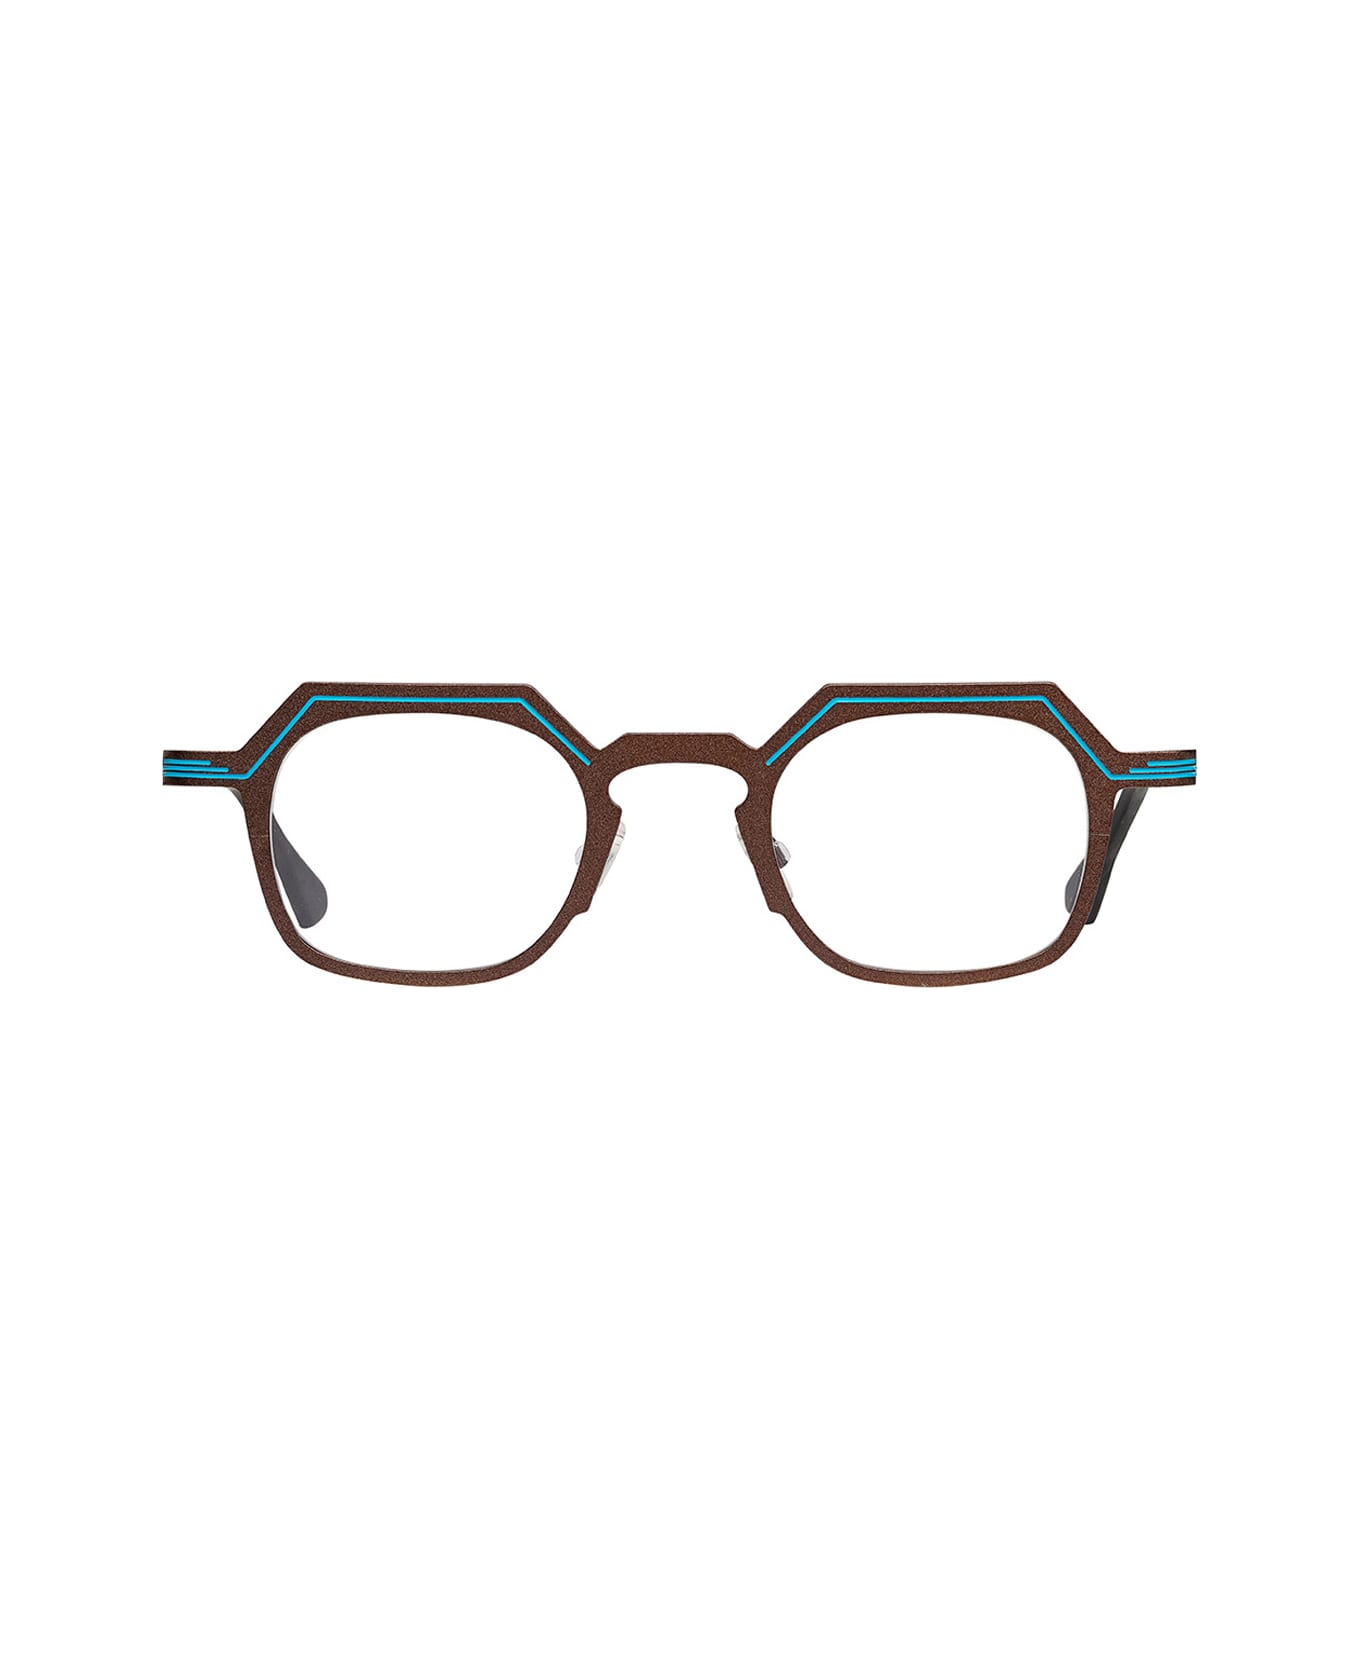 Matttew Delta 1410 Glasses - Marrone アイウェア